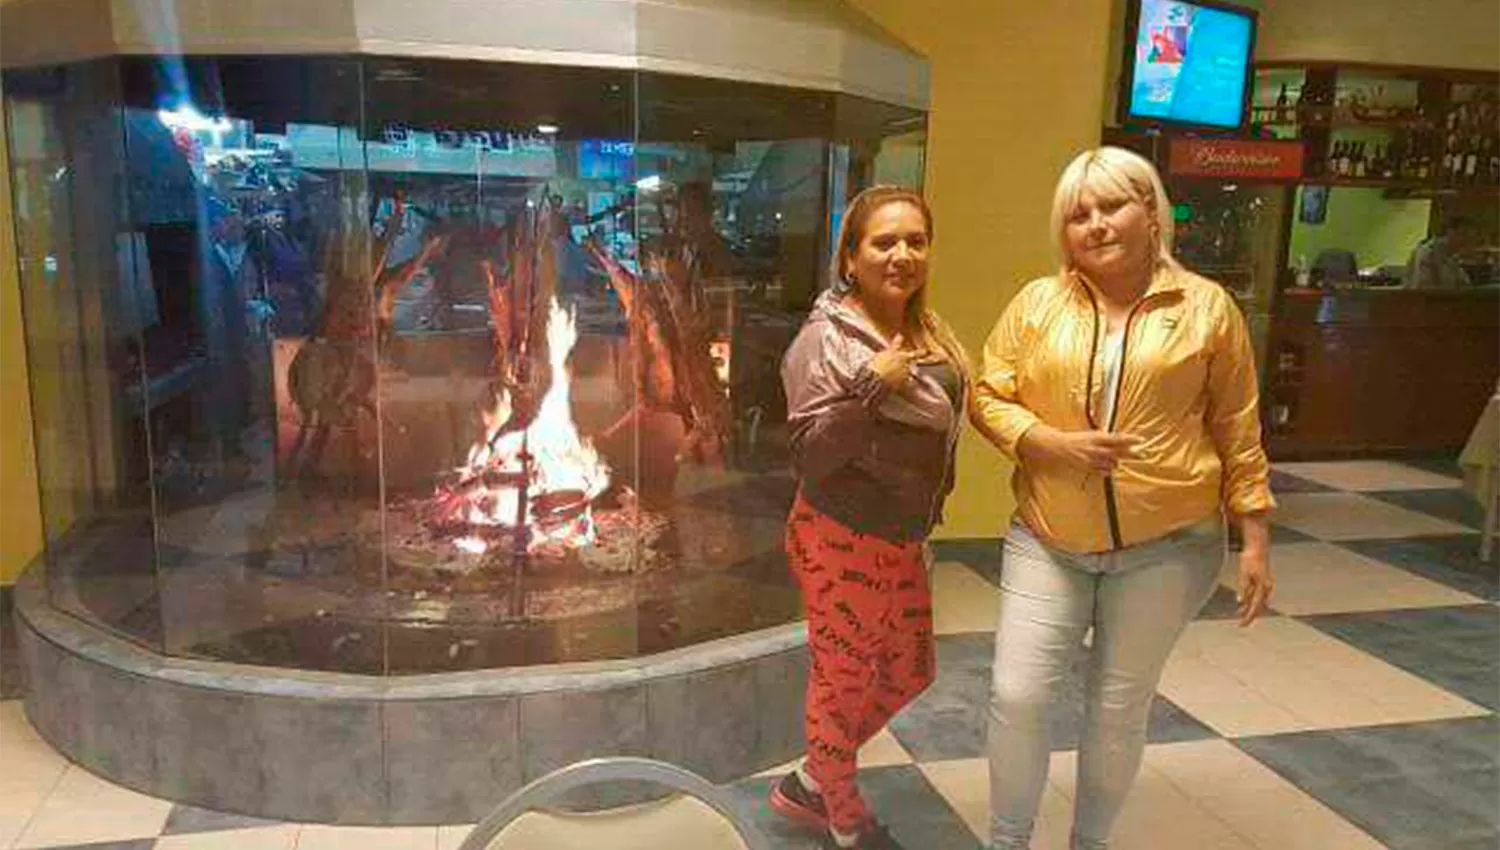 EN PUERTO MADERO. Miryam “La Negra” Soria  y Nilda “La Cabezona” Gómez se fotografiaron junto a unos cabritos a la estaca en un restaurante exclusivo. 